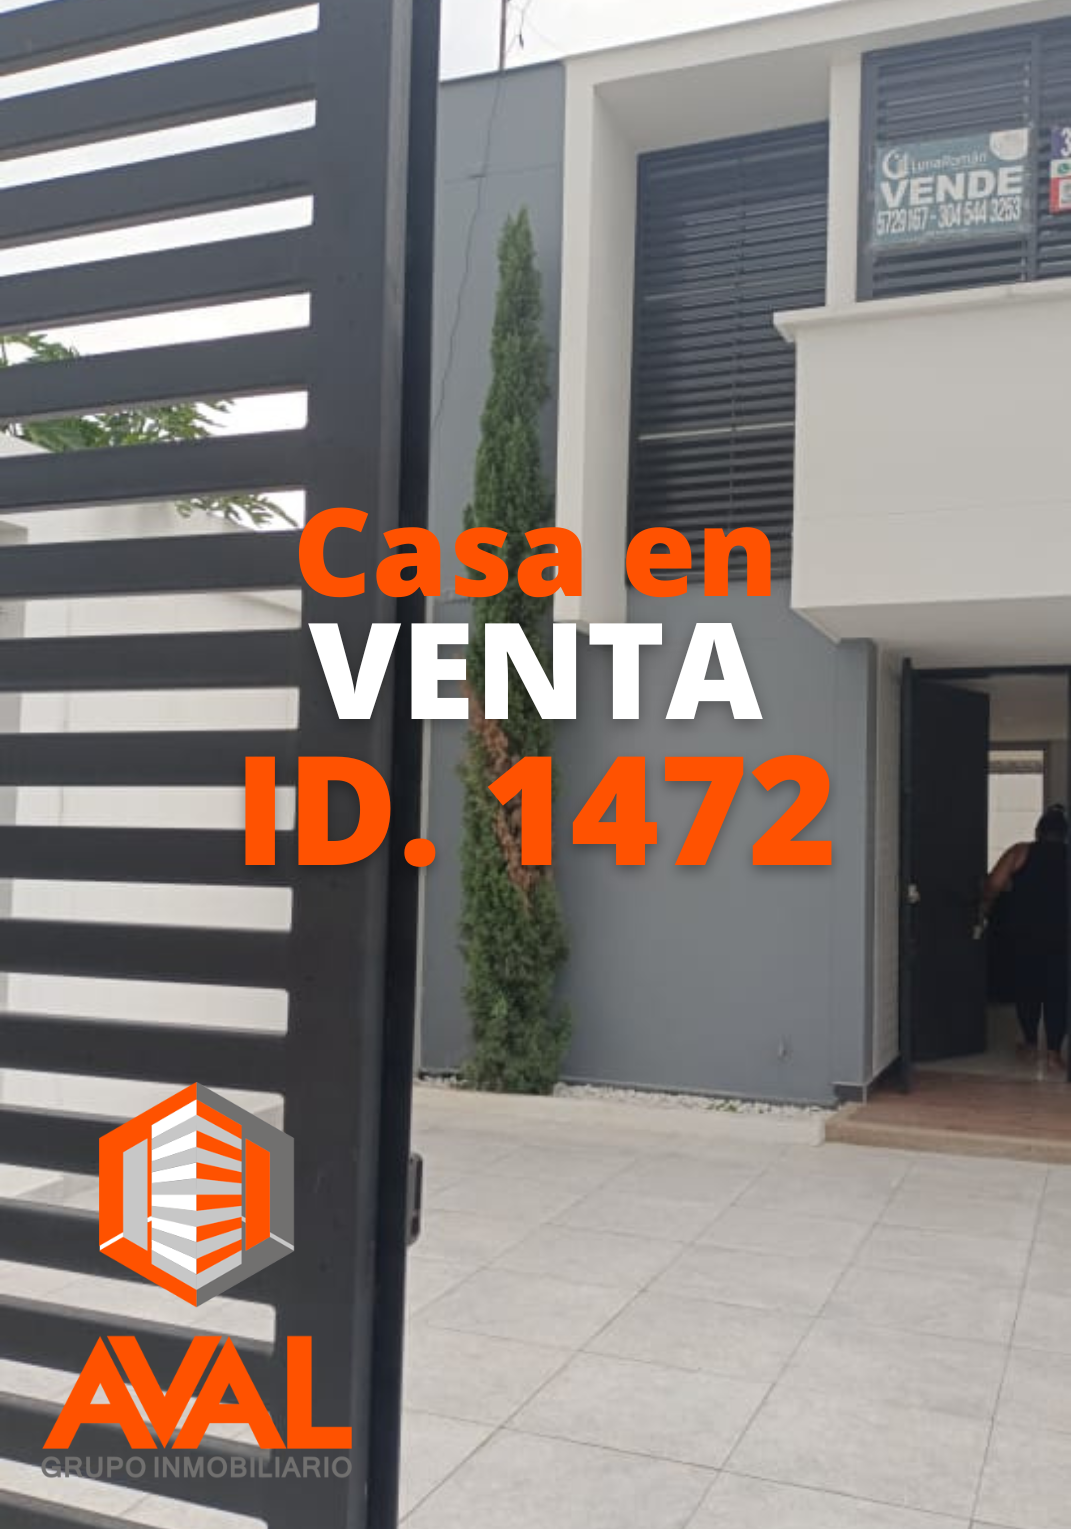 CASA EN VENTA, CÚCUTA, ID 1472